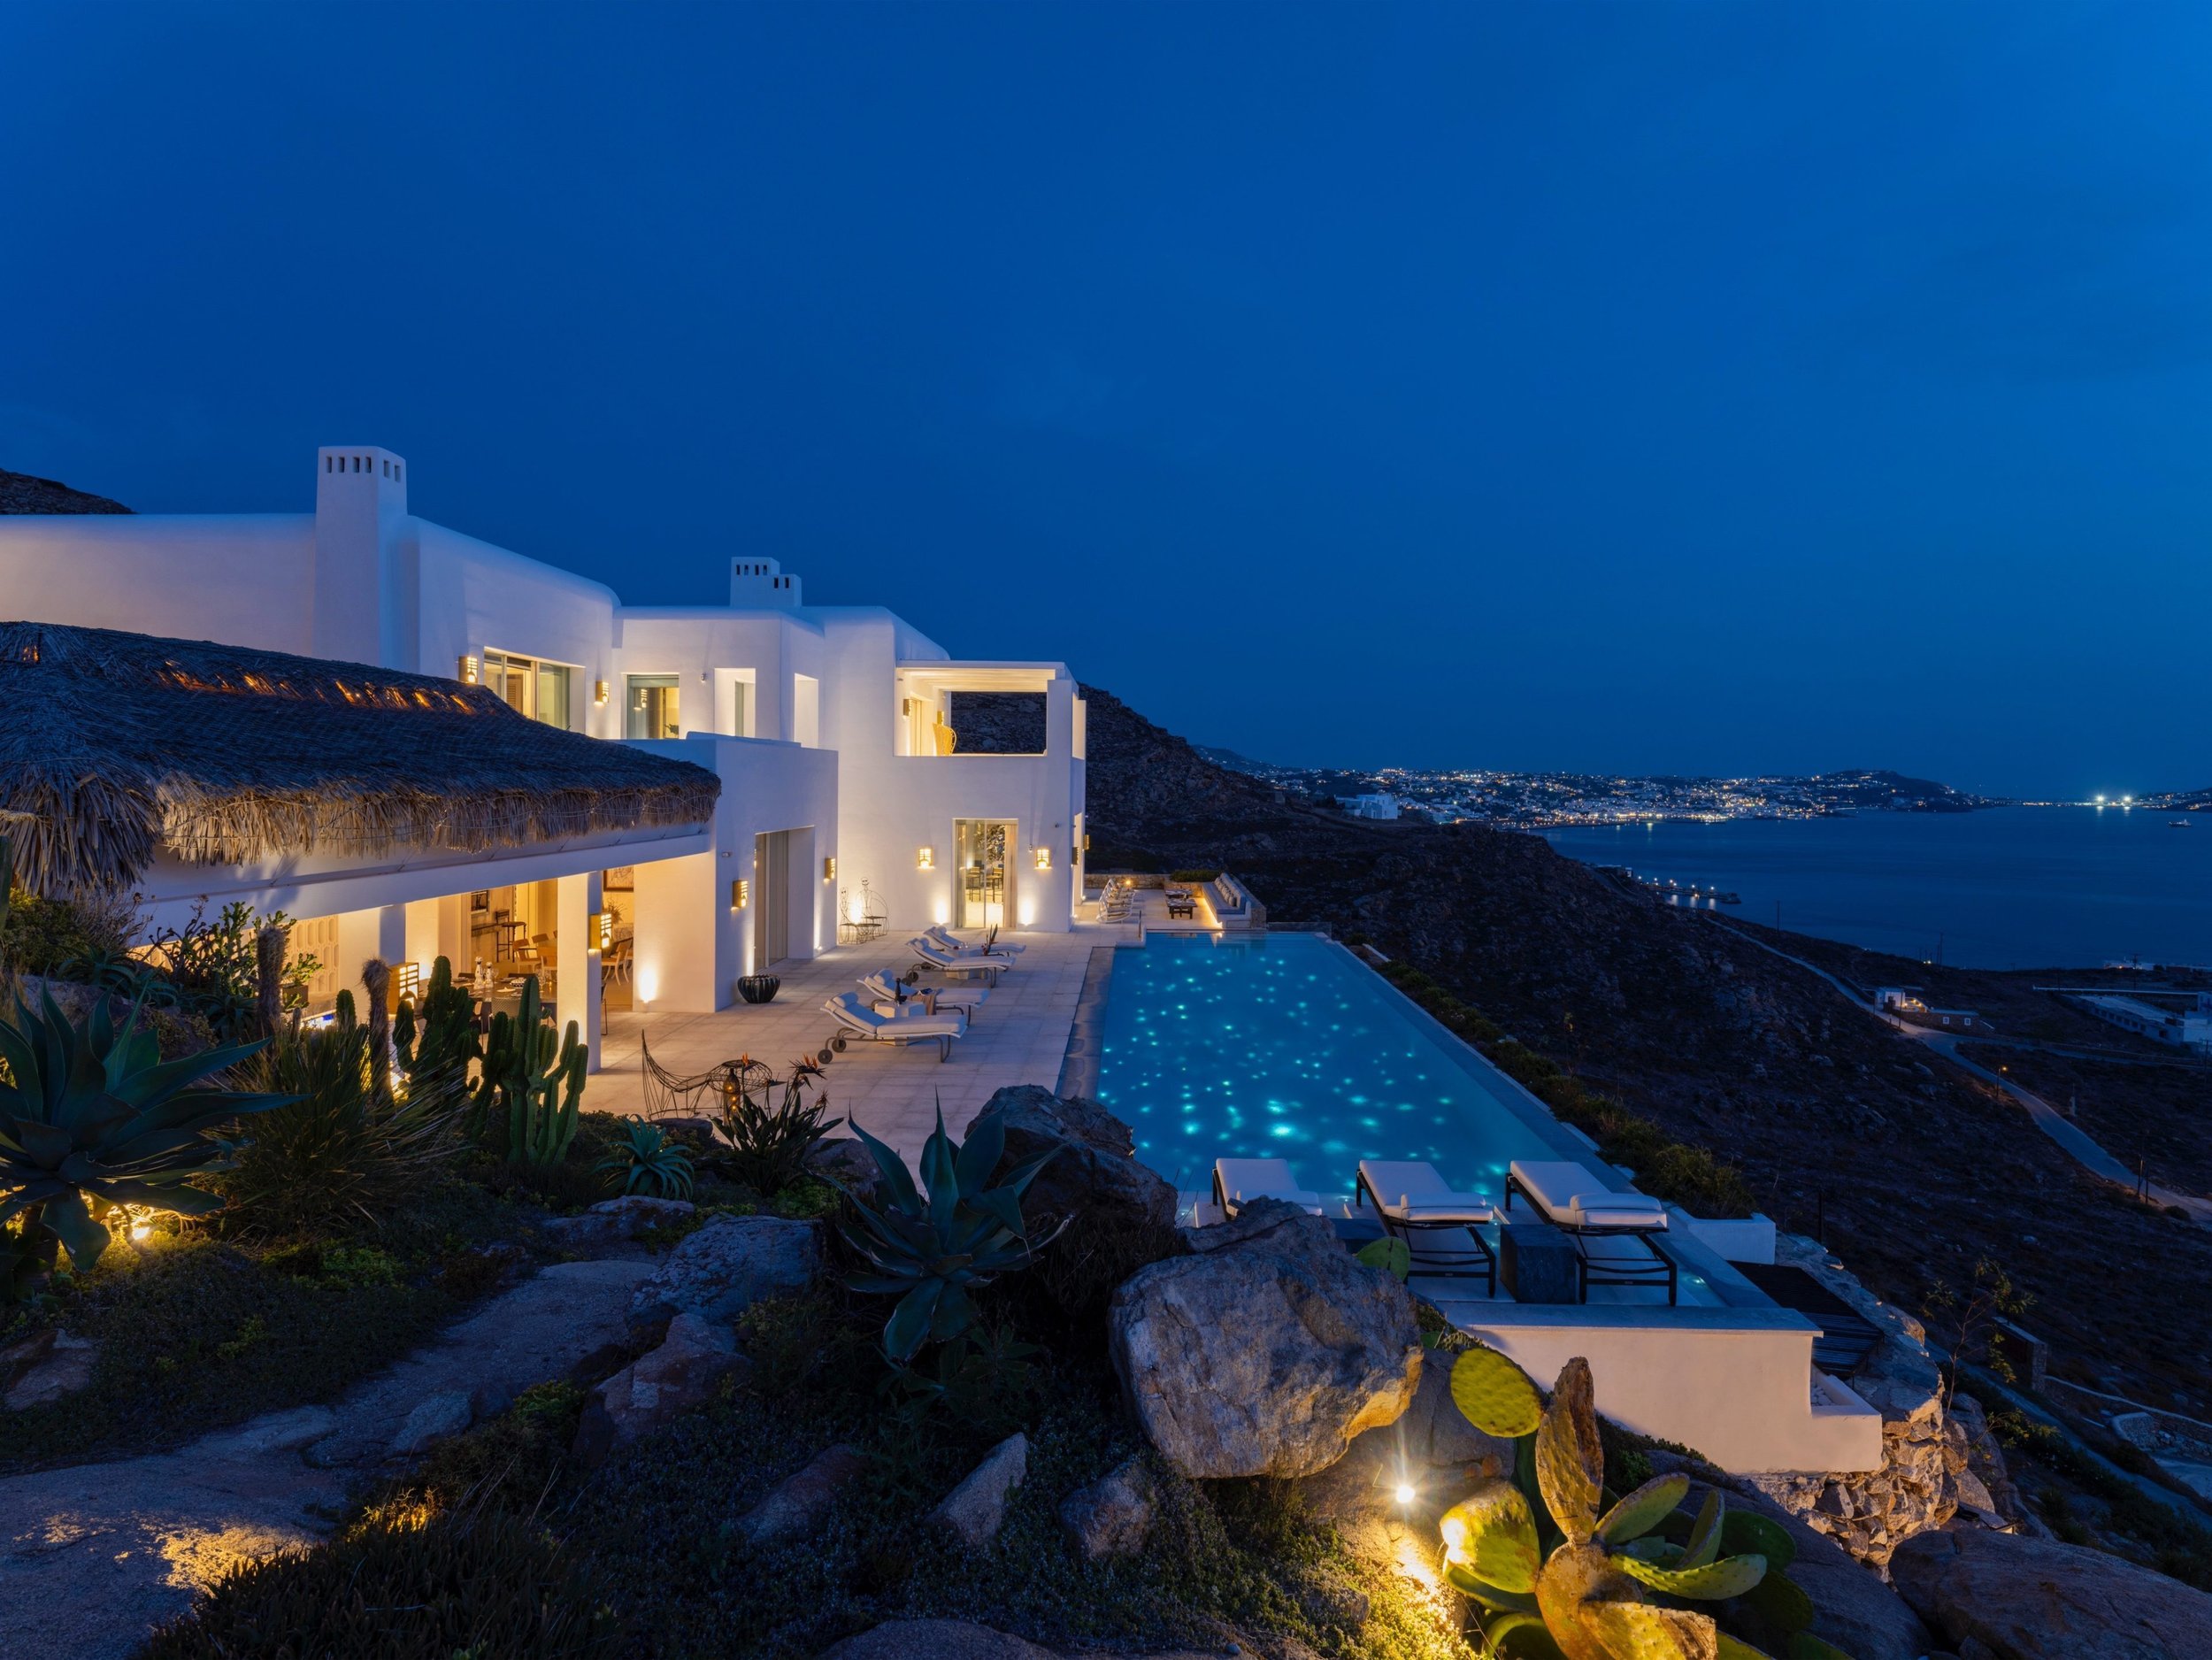 Francis York Luxury Villa For Sale in Mykonos, Greece 2.jpg